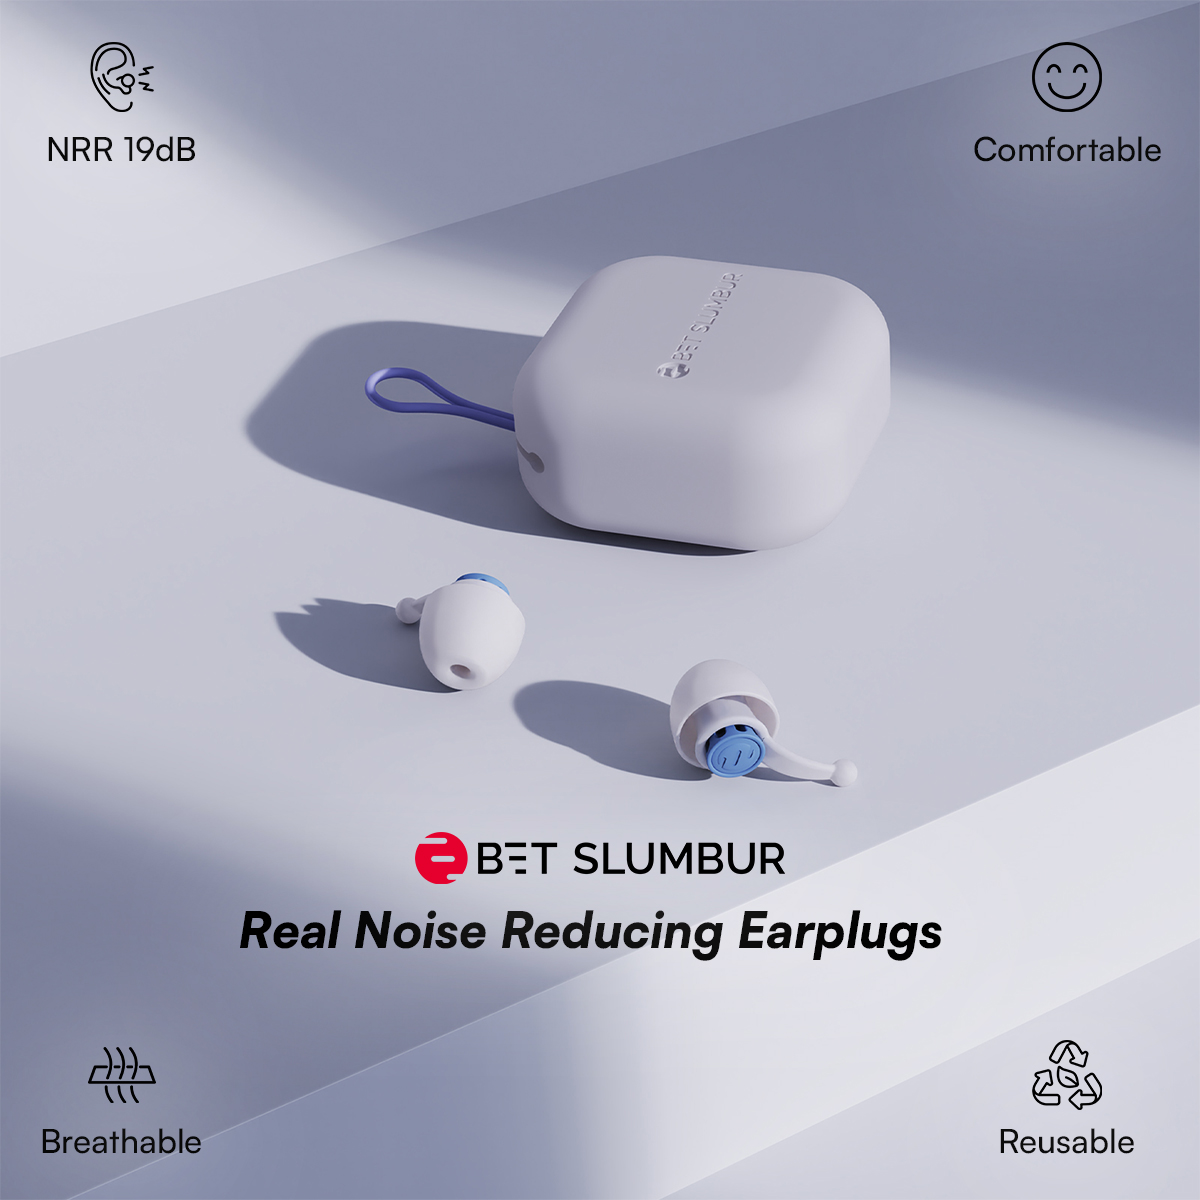 Real Noise Reducing Earplugs